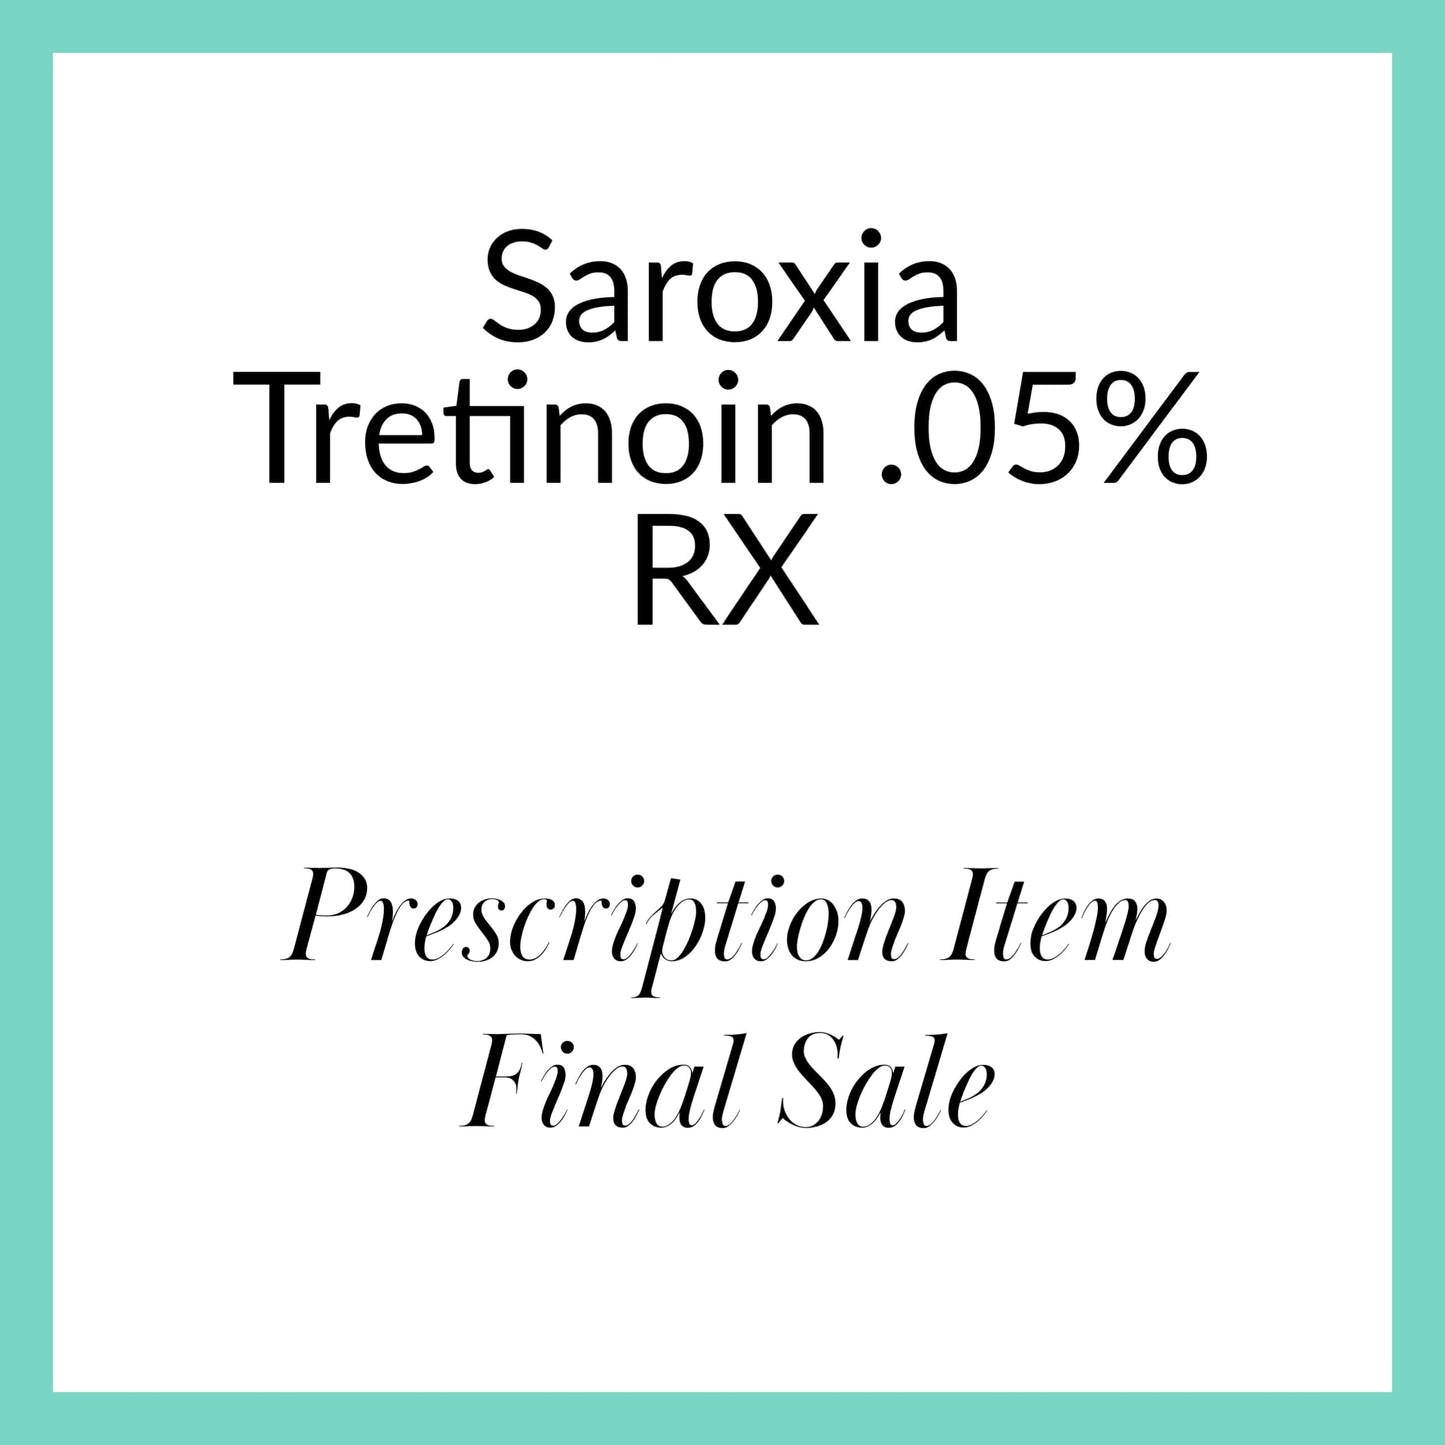 Saroxia Tretinoin .05% RX (formerly Altreno)